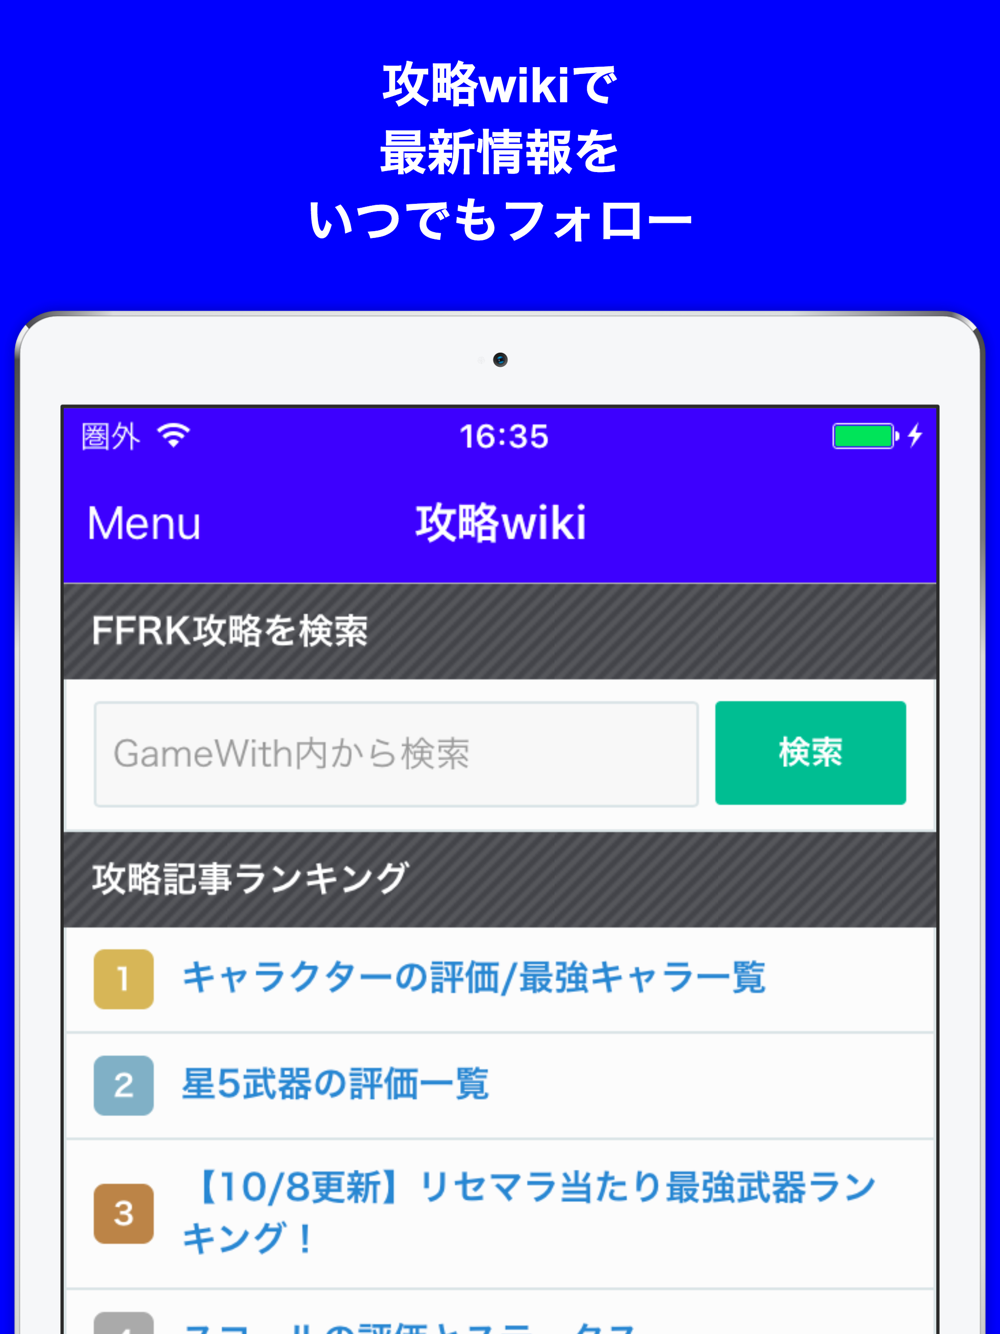 ブログまとめニュース速報 For ファイナルファンタジーレコードキーパーレコードキーパー Free Download App For Iphone Steprimo Com